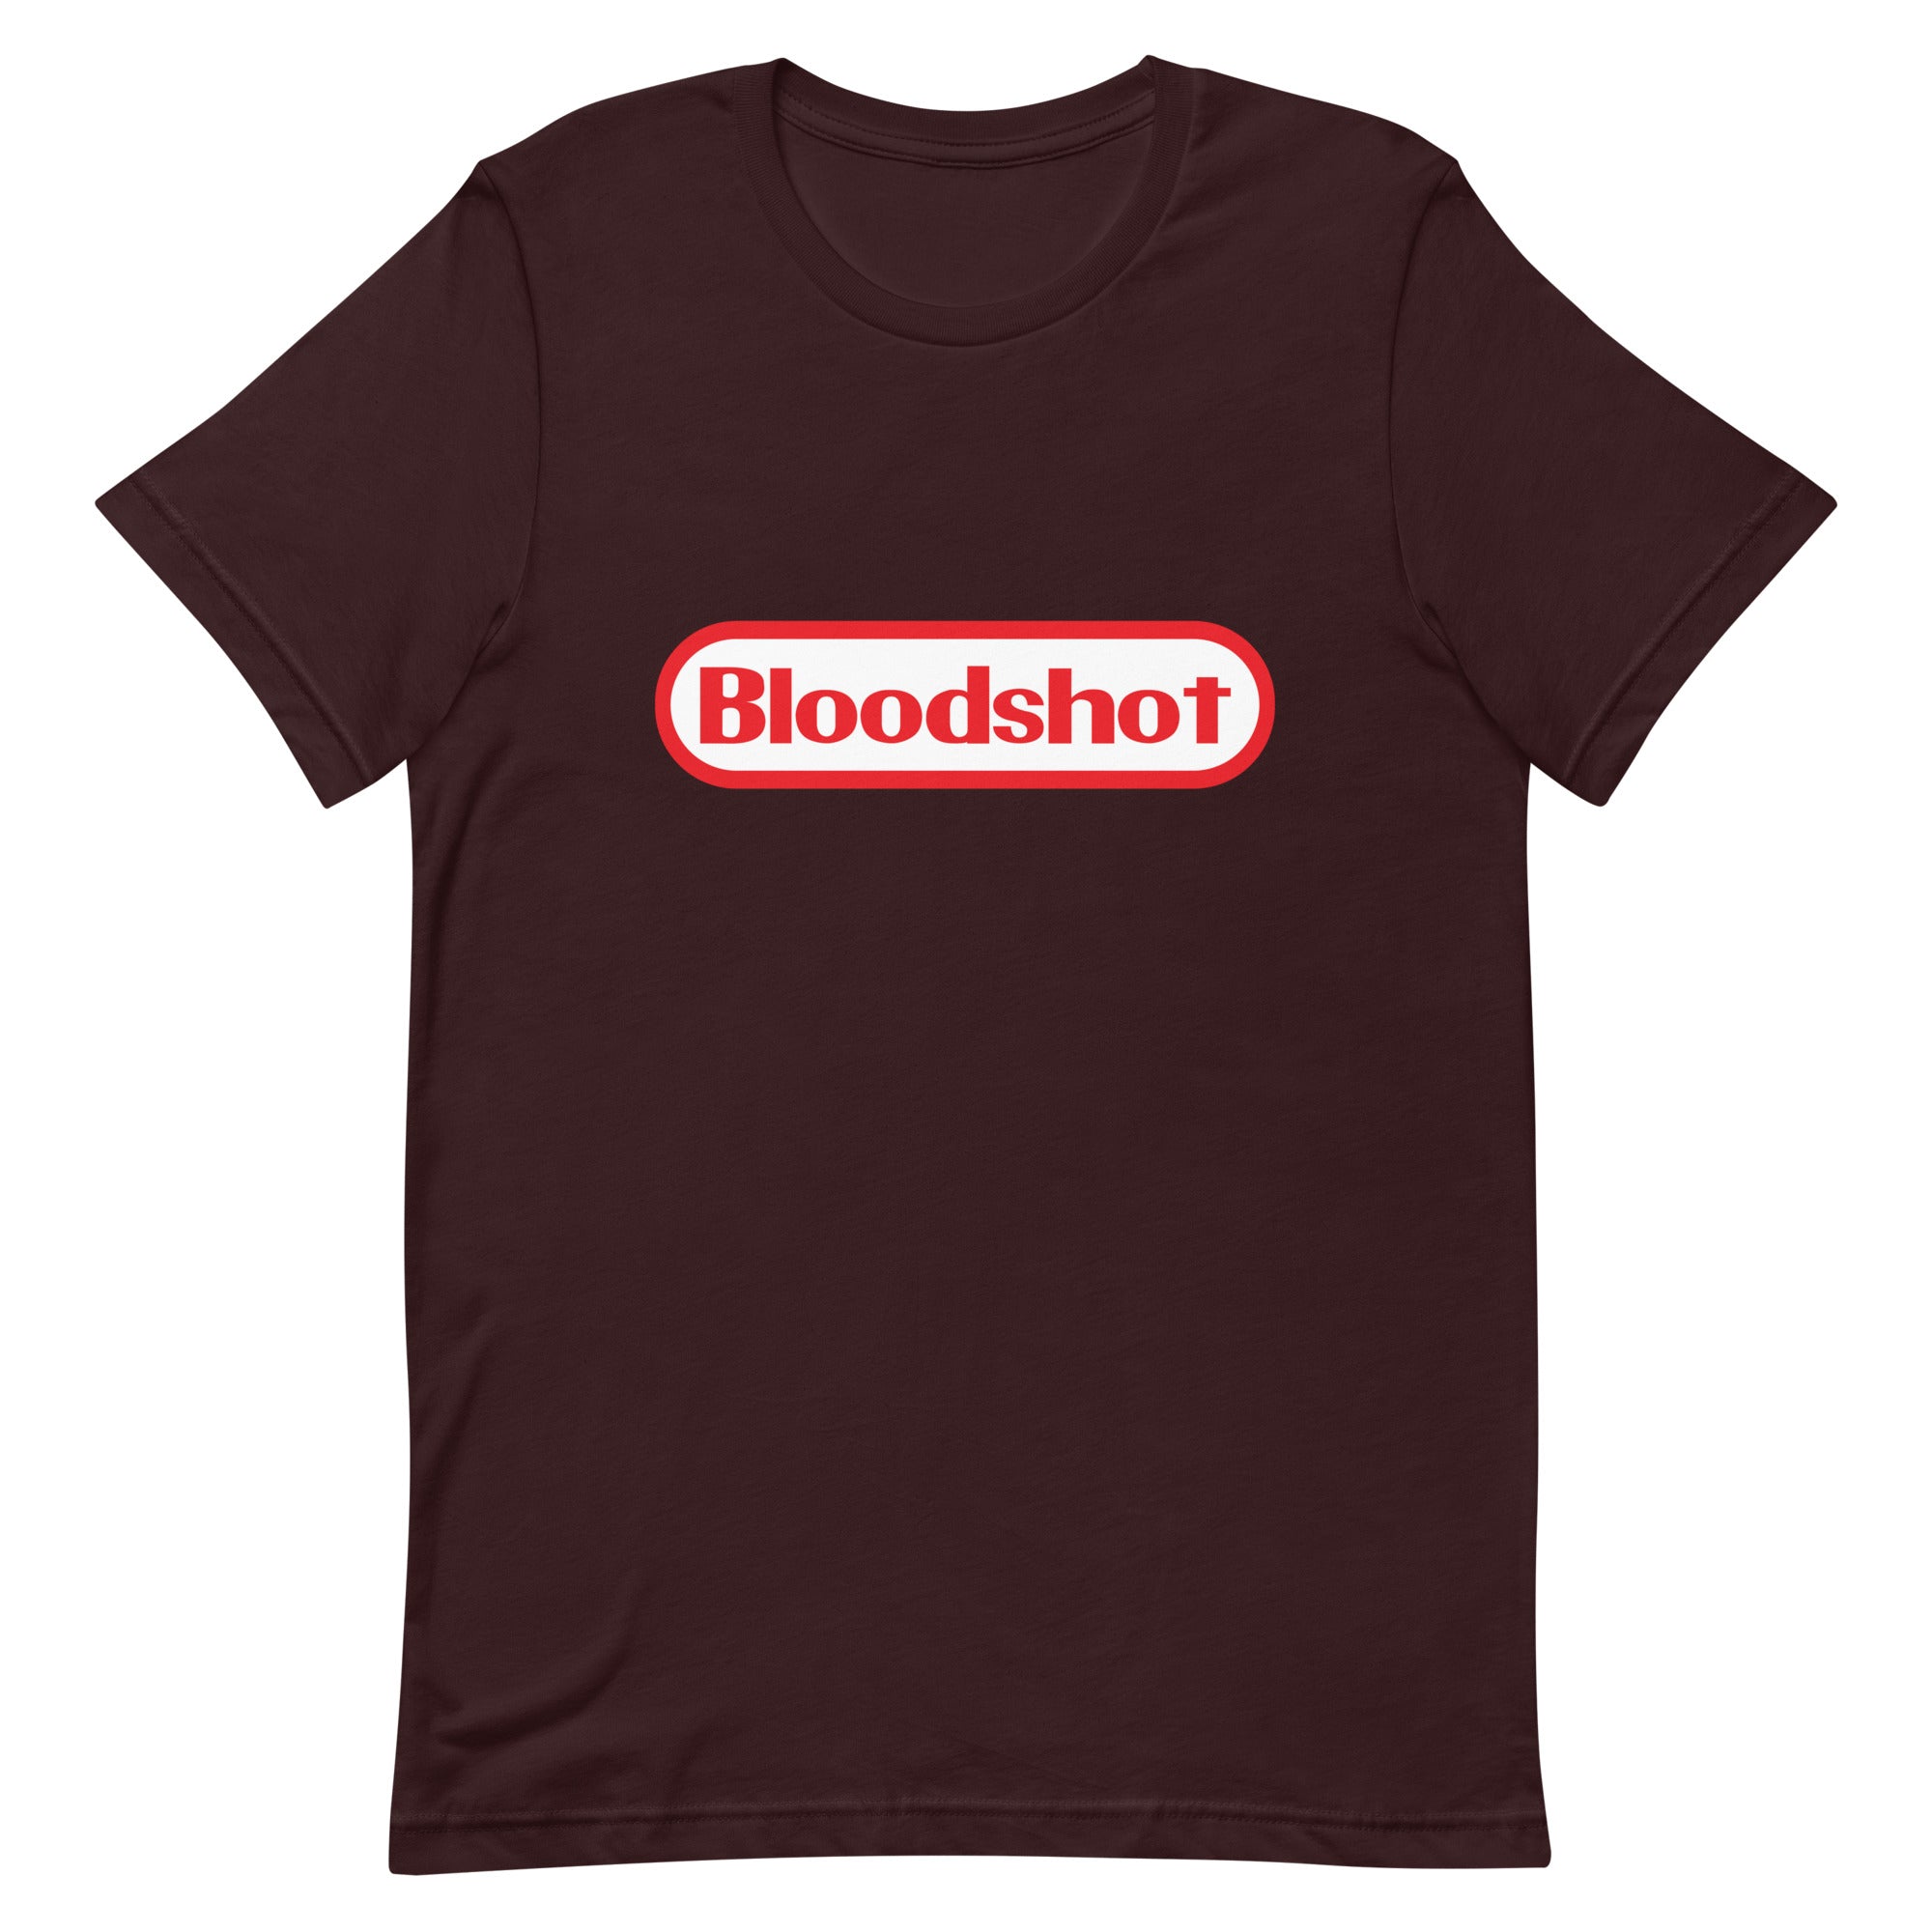 Bloodshot - Unisex t-shirt